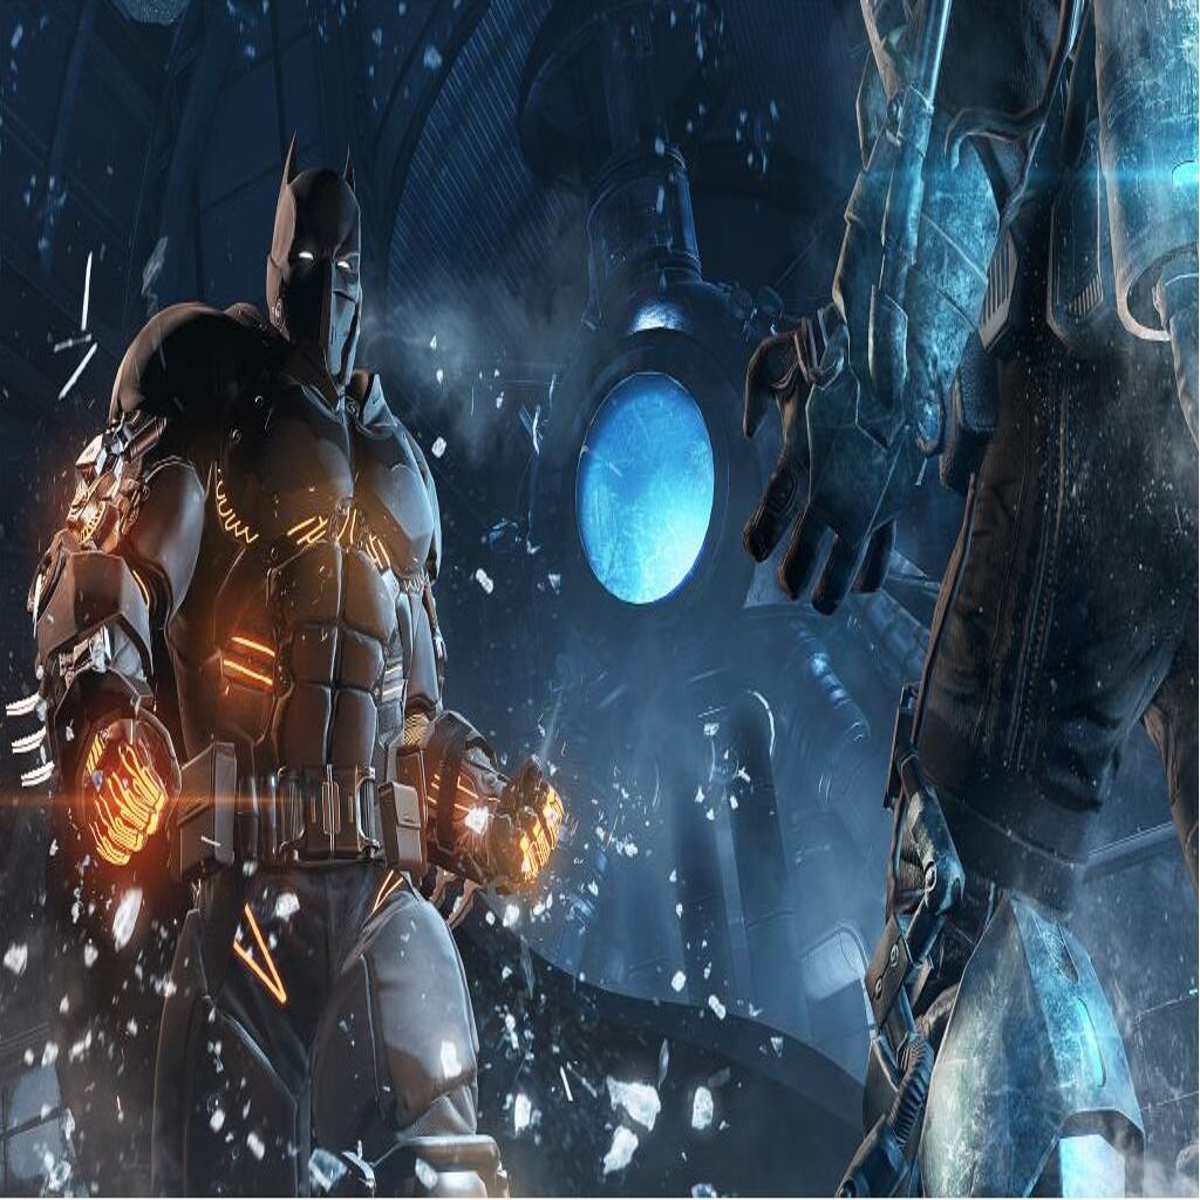 batman arkham origins cold cold heart xe suit